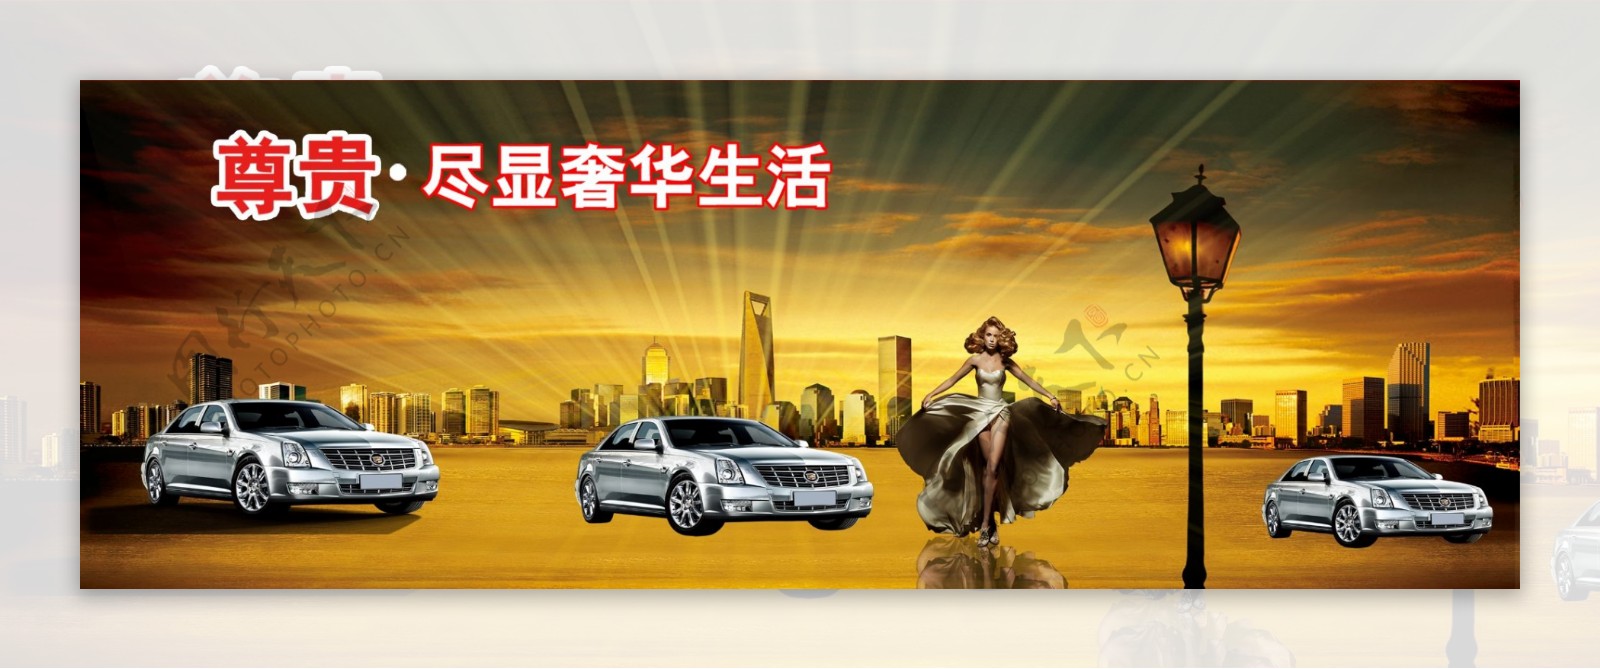 汽车广告设计宣传图片